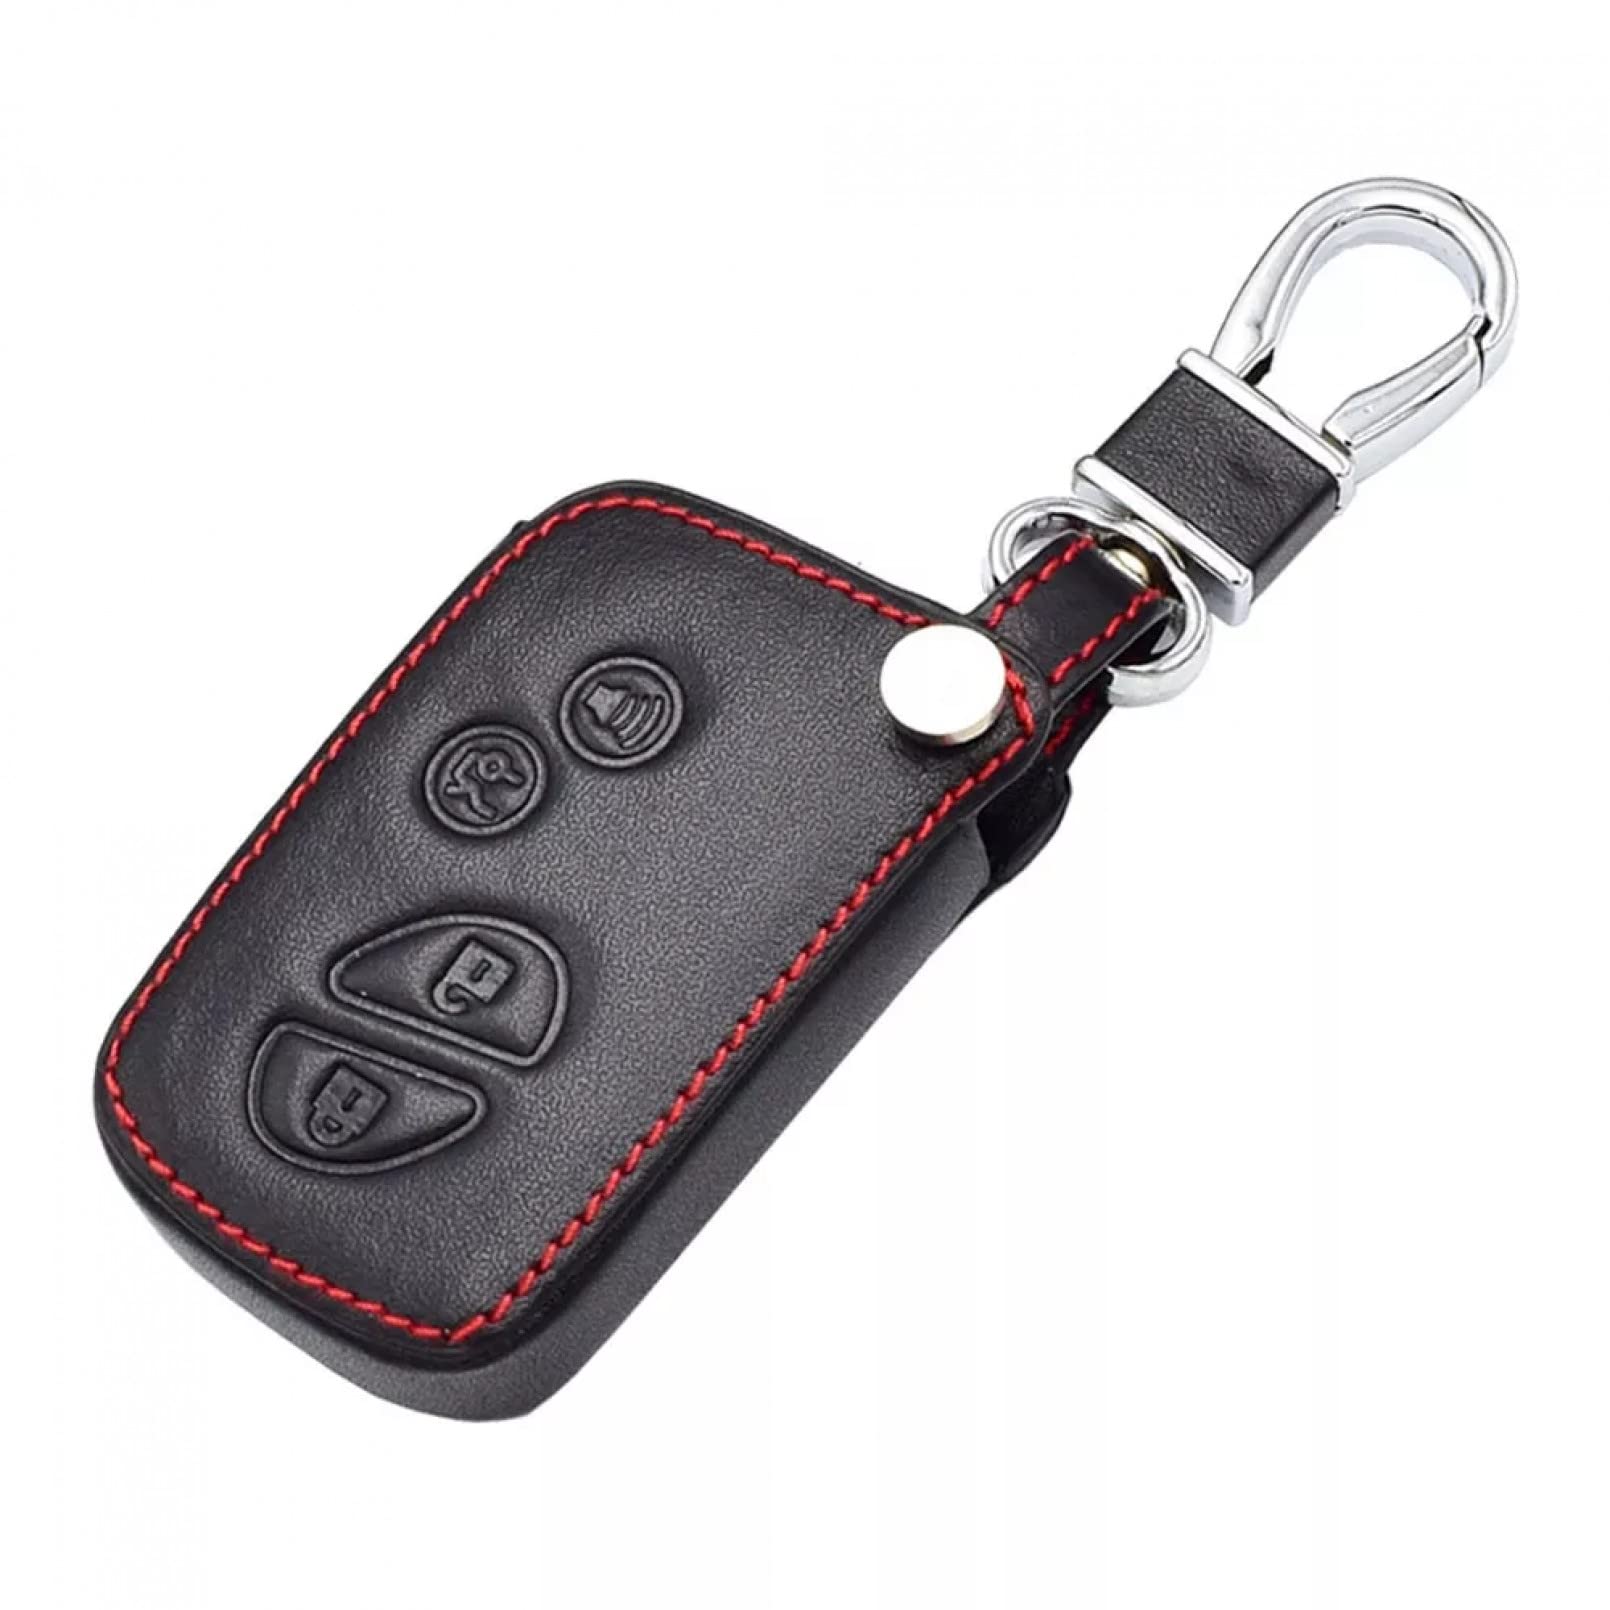 Leder Autoschlüssel Fall 4 Tasten Smart Remote Schlüsselanhänger Tasche Schlüsselanhänger Auto Zubehör für Lexus ES 300h 250 350 is GS CT200h RX CT200 ES240 GX400 LX570 RX270 von ALIANQ